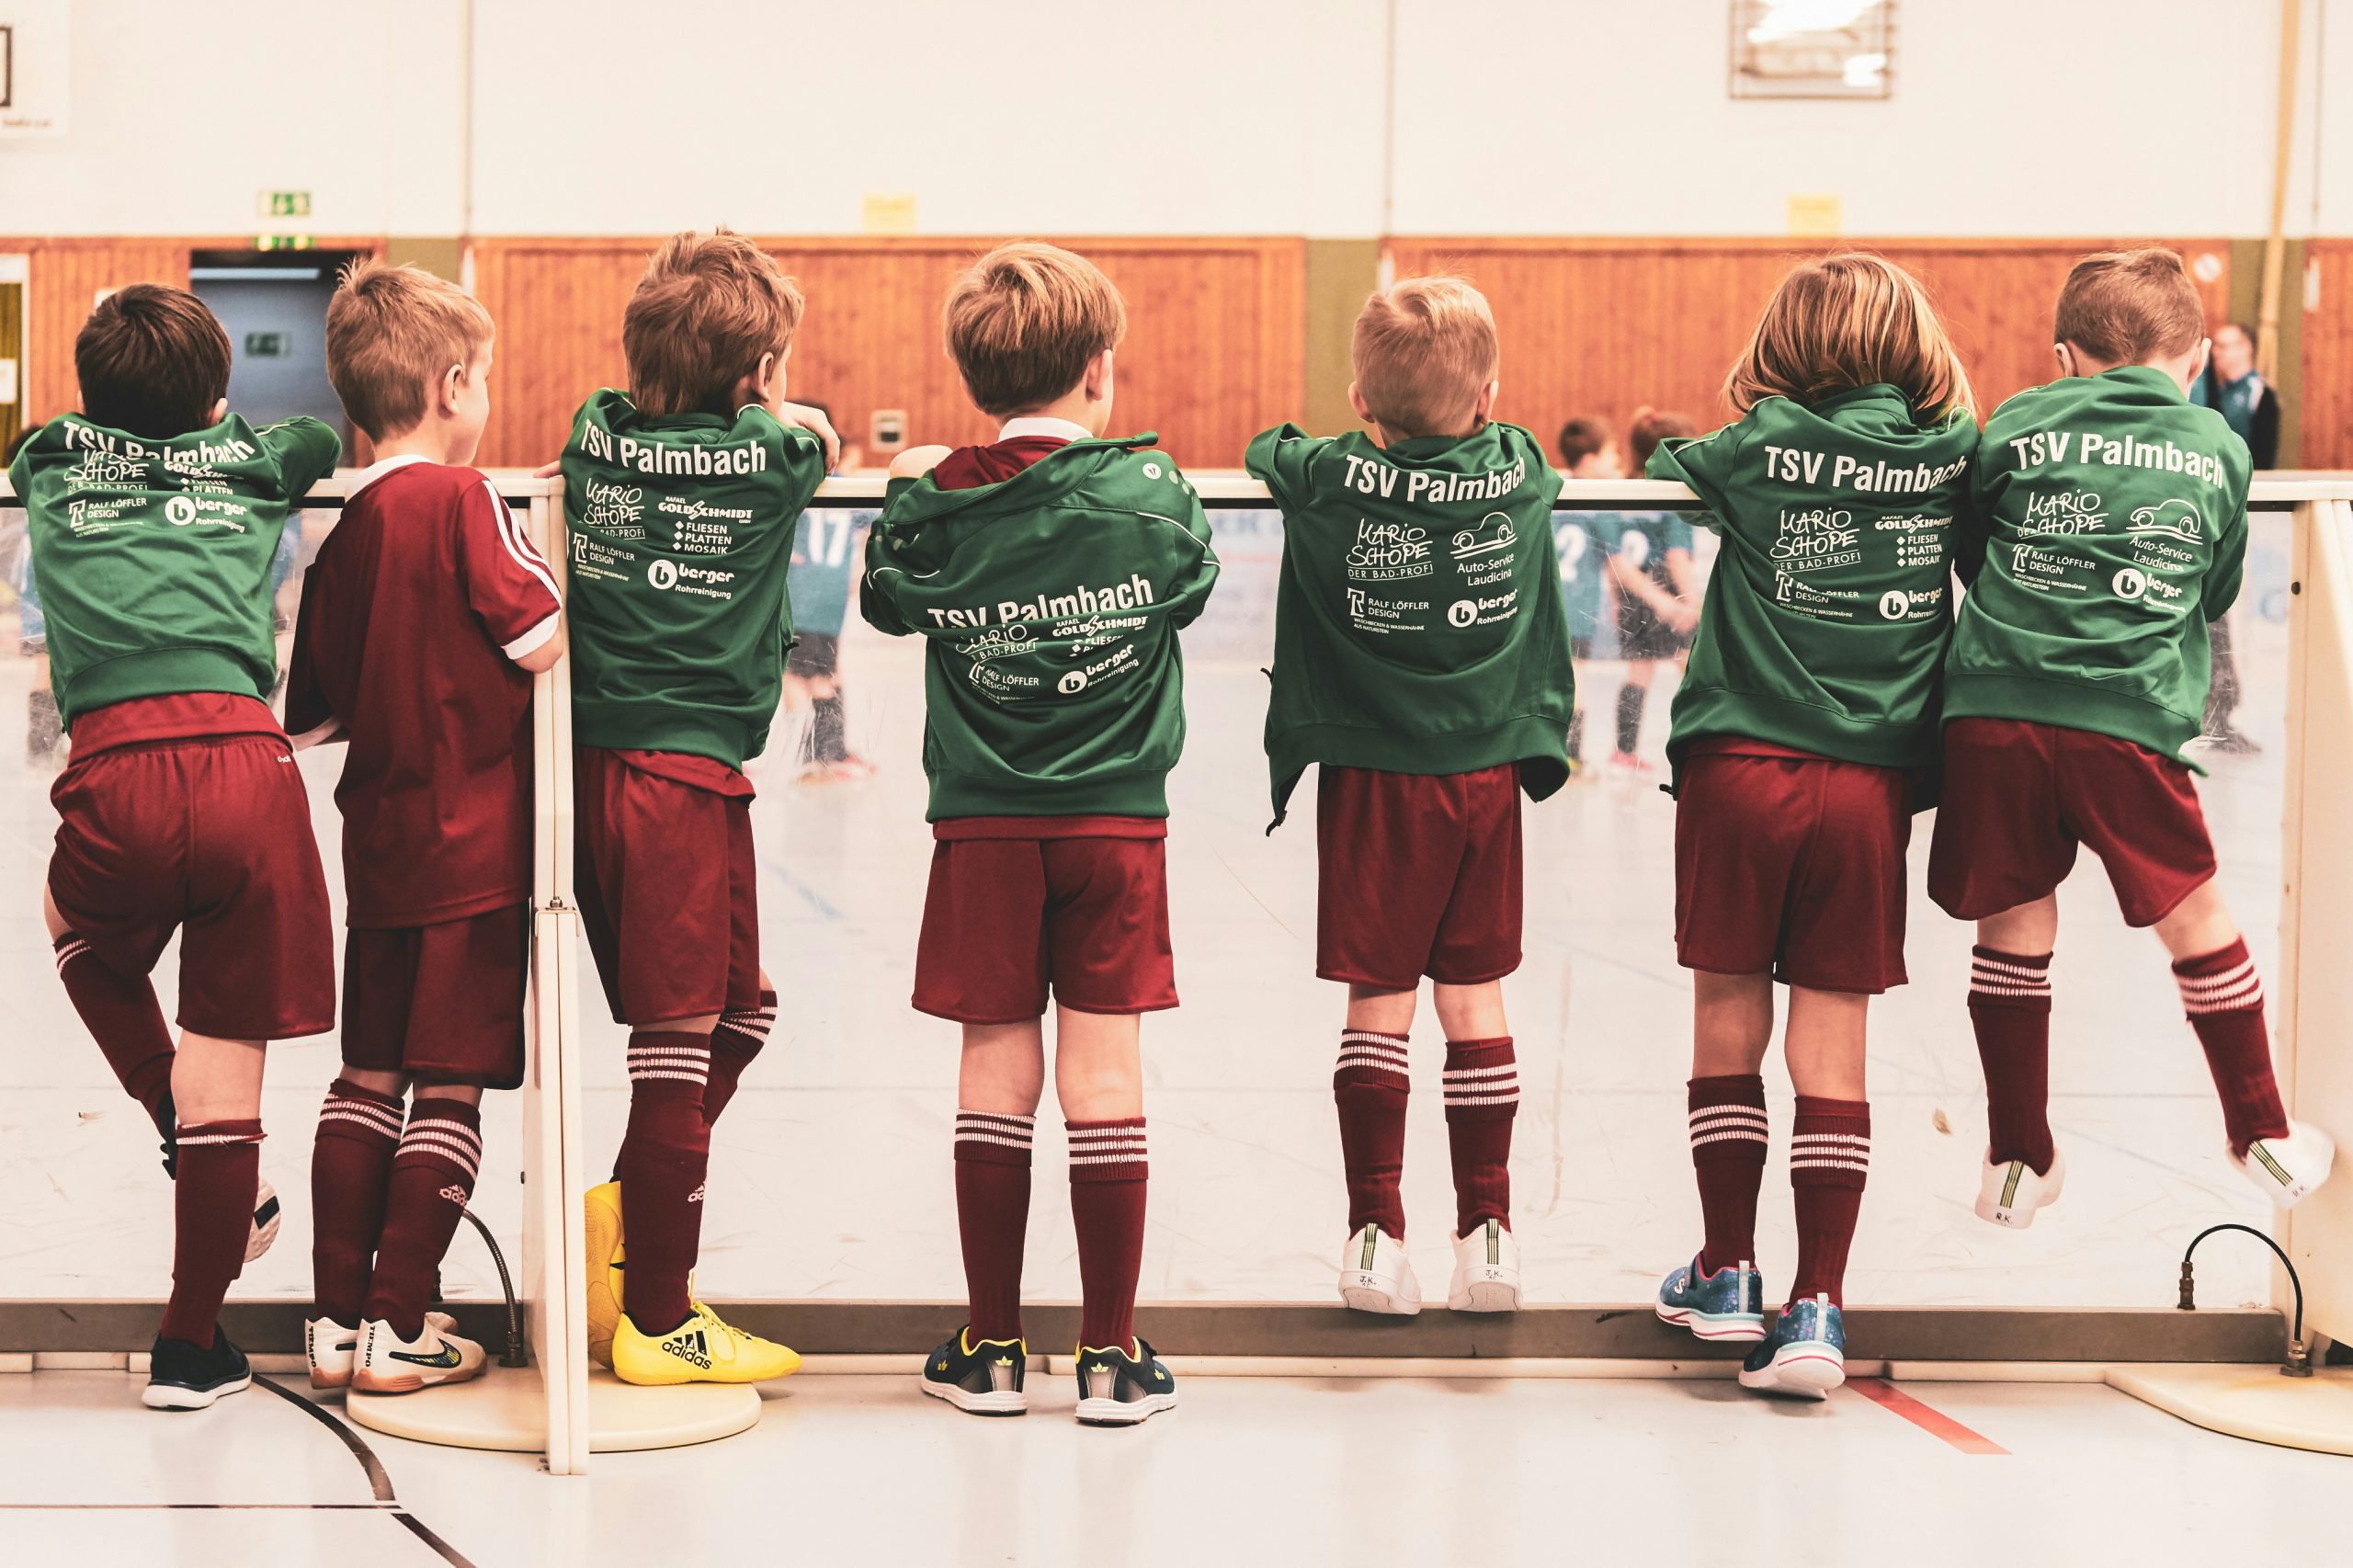 Der mentale Kick: Die positiven Auswirkungen von Chelsea-Kinderfußballtrikots auf die kindliche Entwicklung